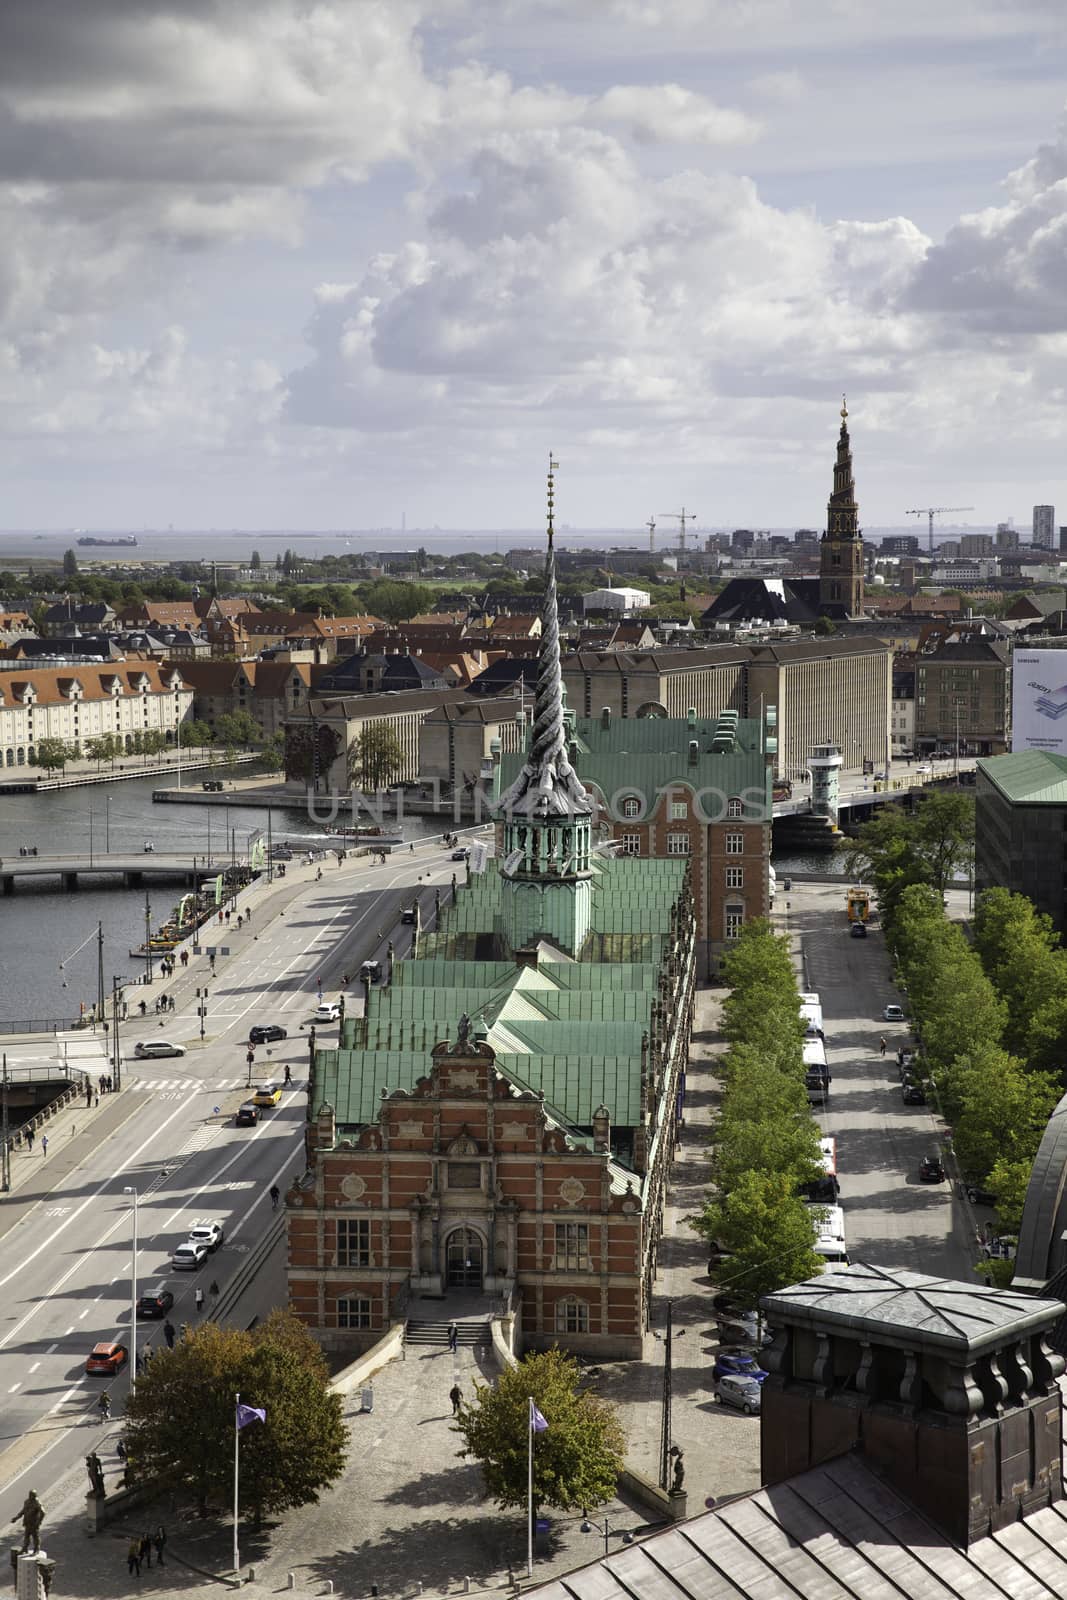 COPENHAGEN, DENMARK - 11 September 2019, Borsen aerial view, also known as Borsbygningen, is a 17th-century stock exchange